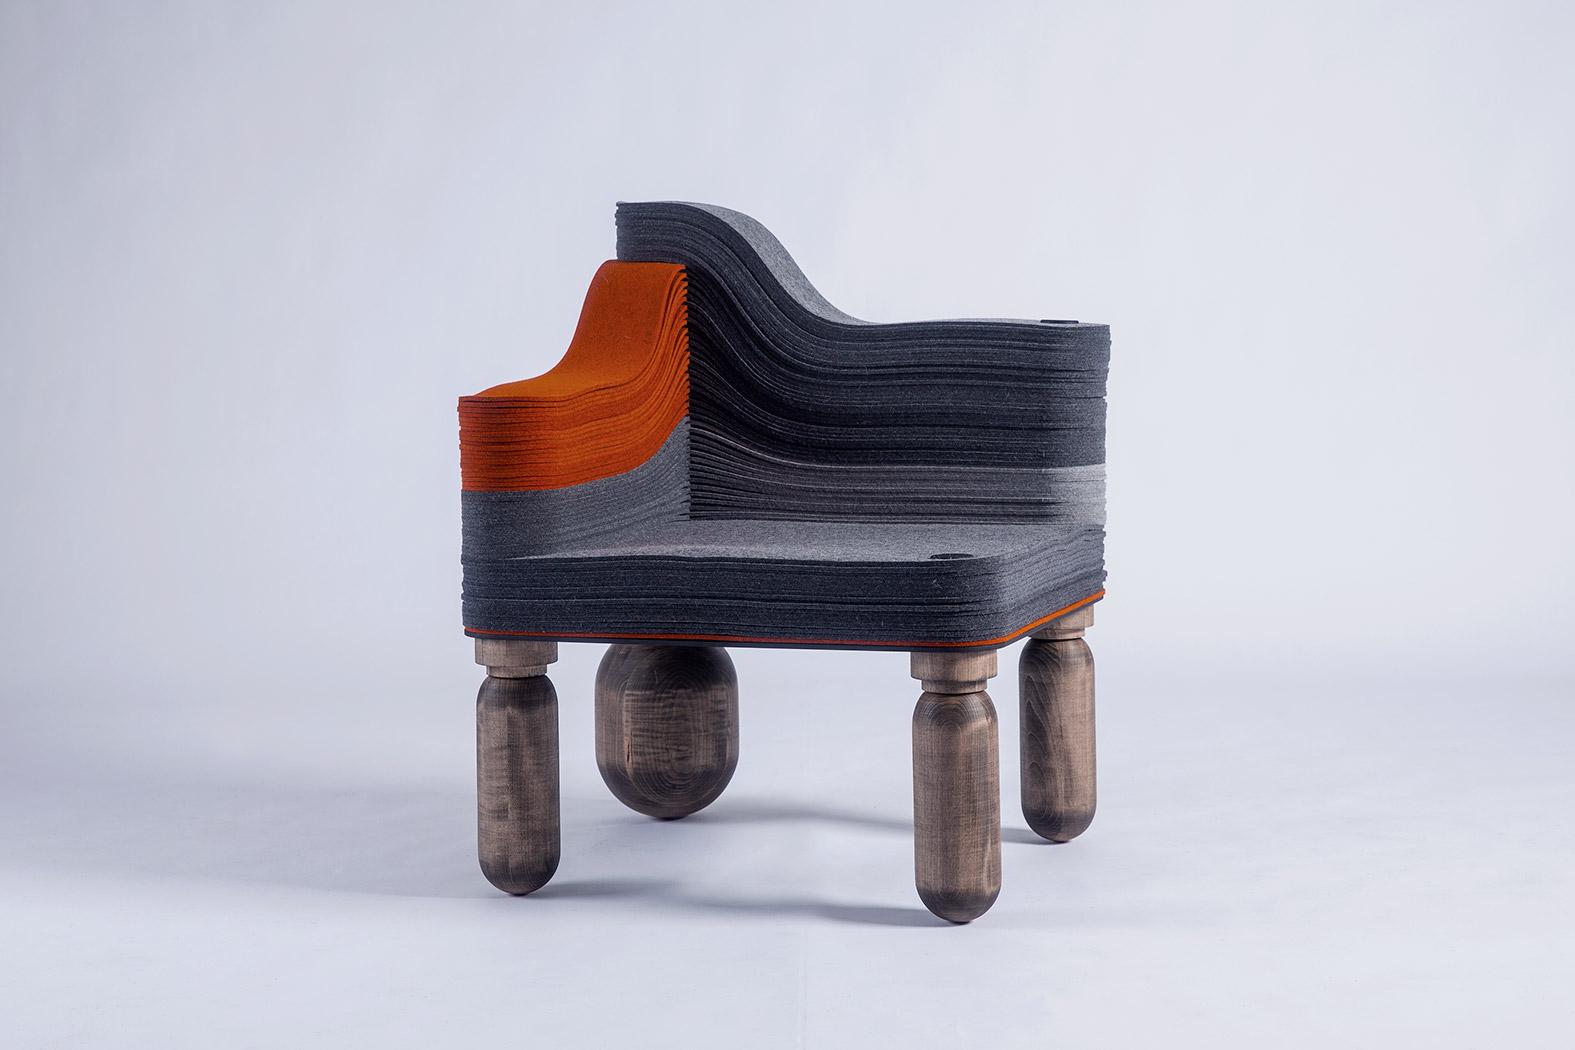 STACKABL ist ein Konfigurator, der es jedem ermöglicht, Möbel online zu konfigurieren, ein innovatives System, das es Ihnen ermöglicht, hochwertige, überschüssige Metall-, Holz- und Filzreste von unseren Produktionspartnern - die sich in einem